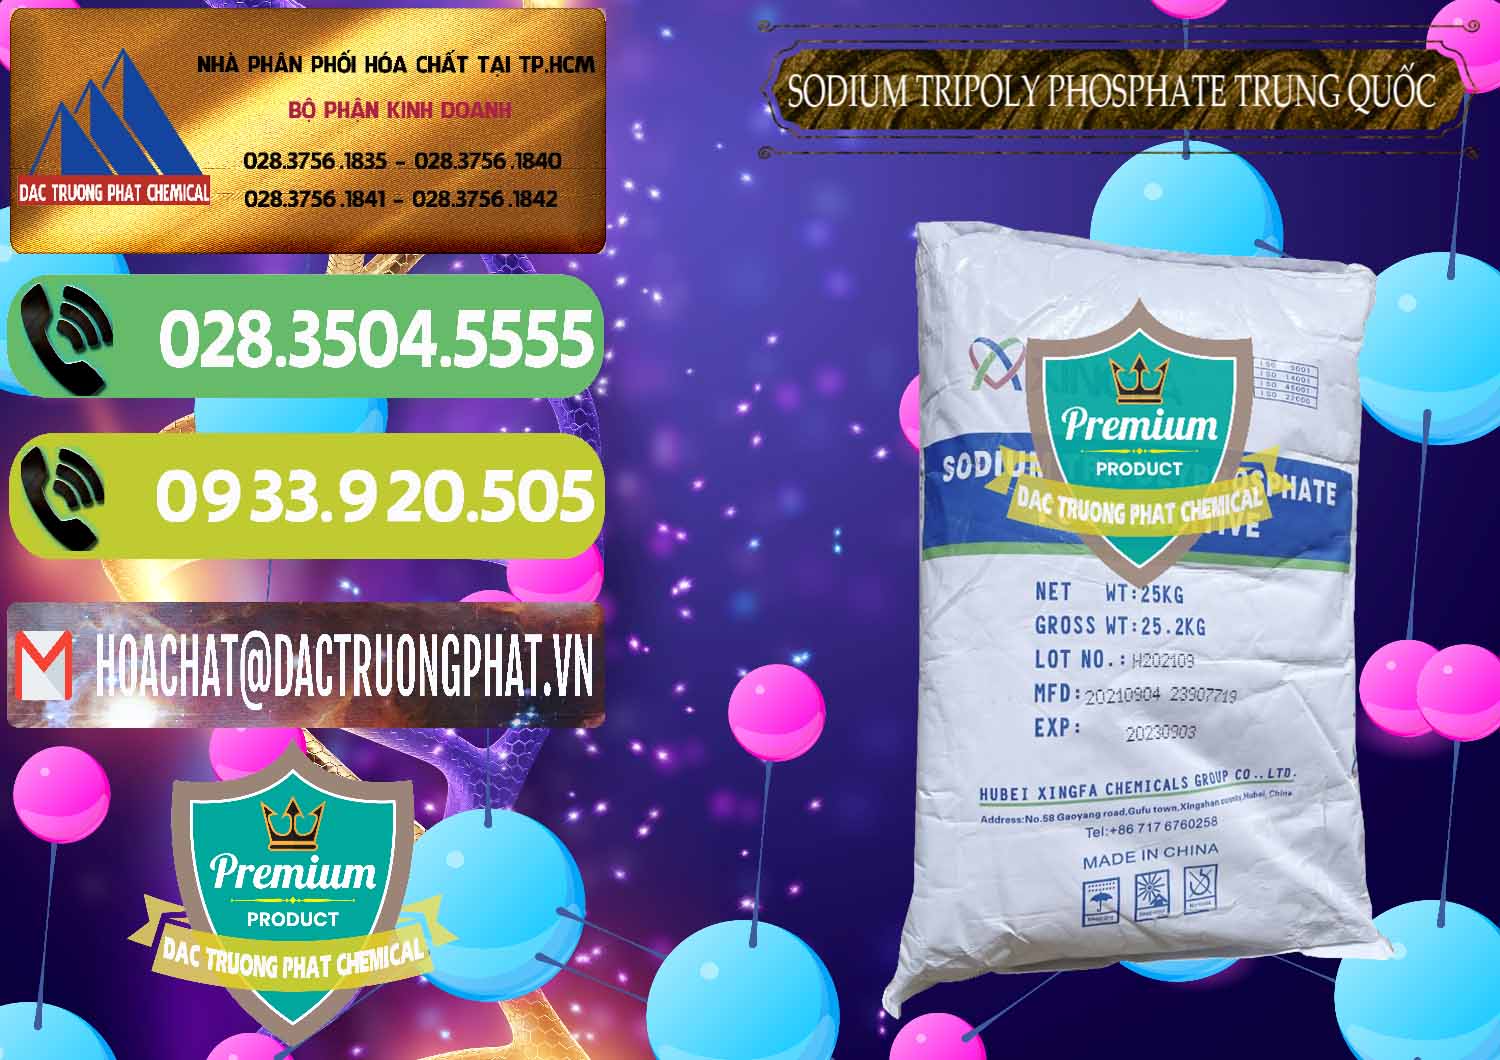 Cty chuyên bán - cung cấp Sodium Tripoly Phosphate - STPP 96% Xingfa Trung Quốc China - 0433 - Đơn vị cung cấp và bán hóa chất tại TP.HCM - hoachatmientay.vn